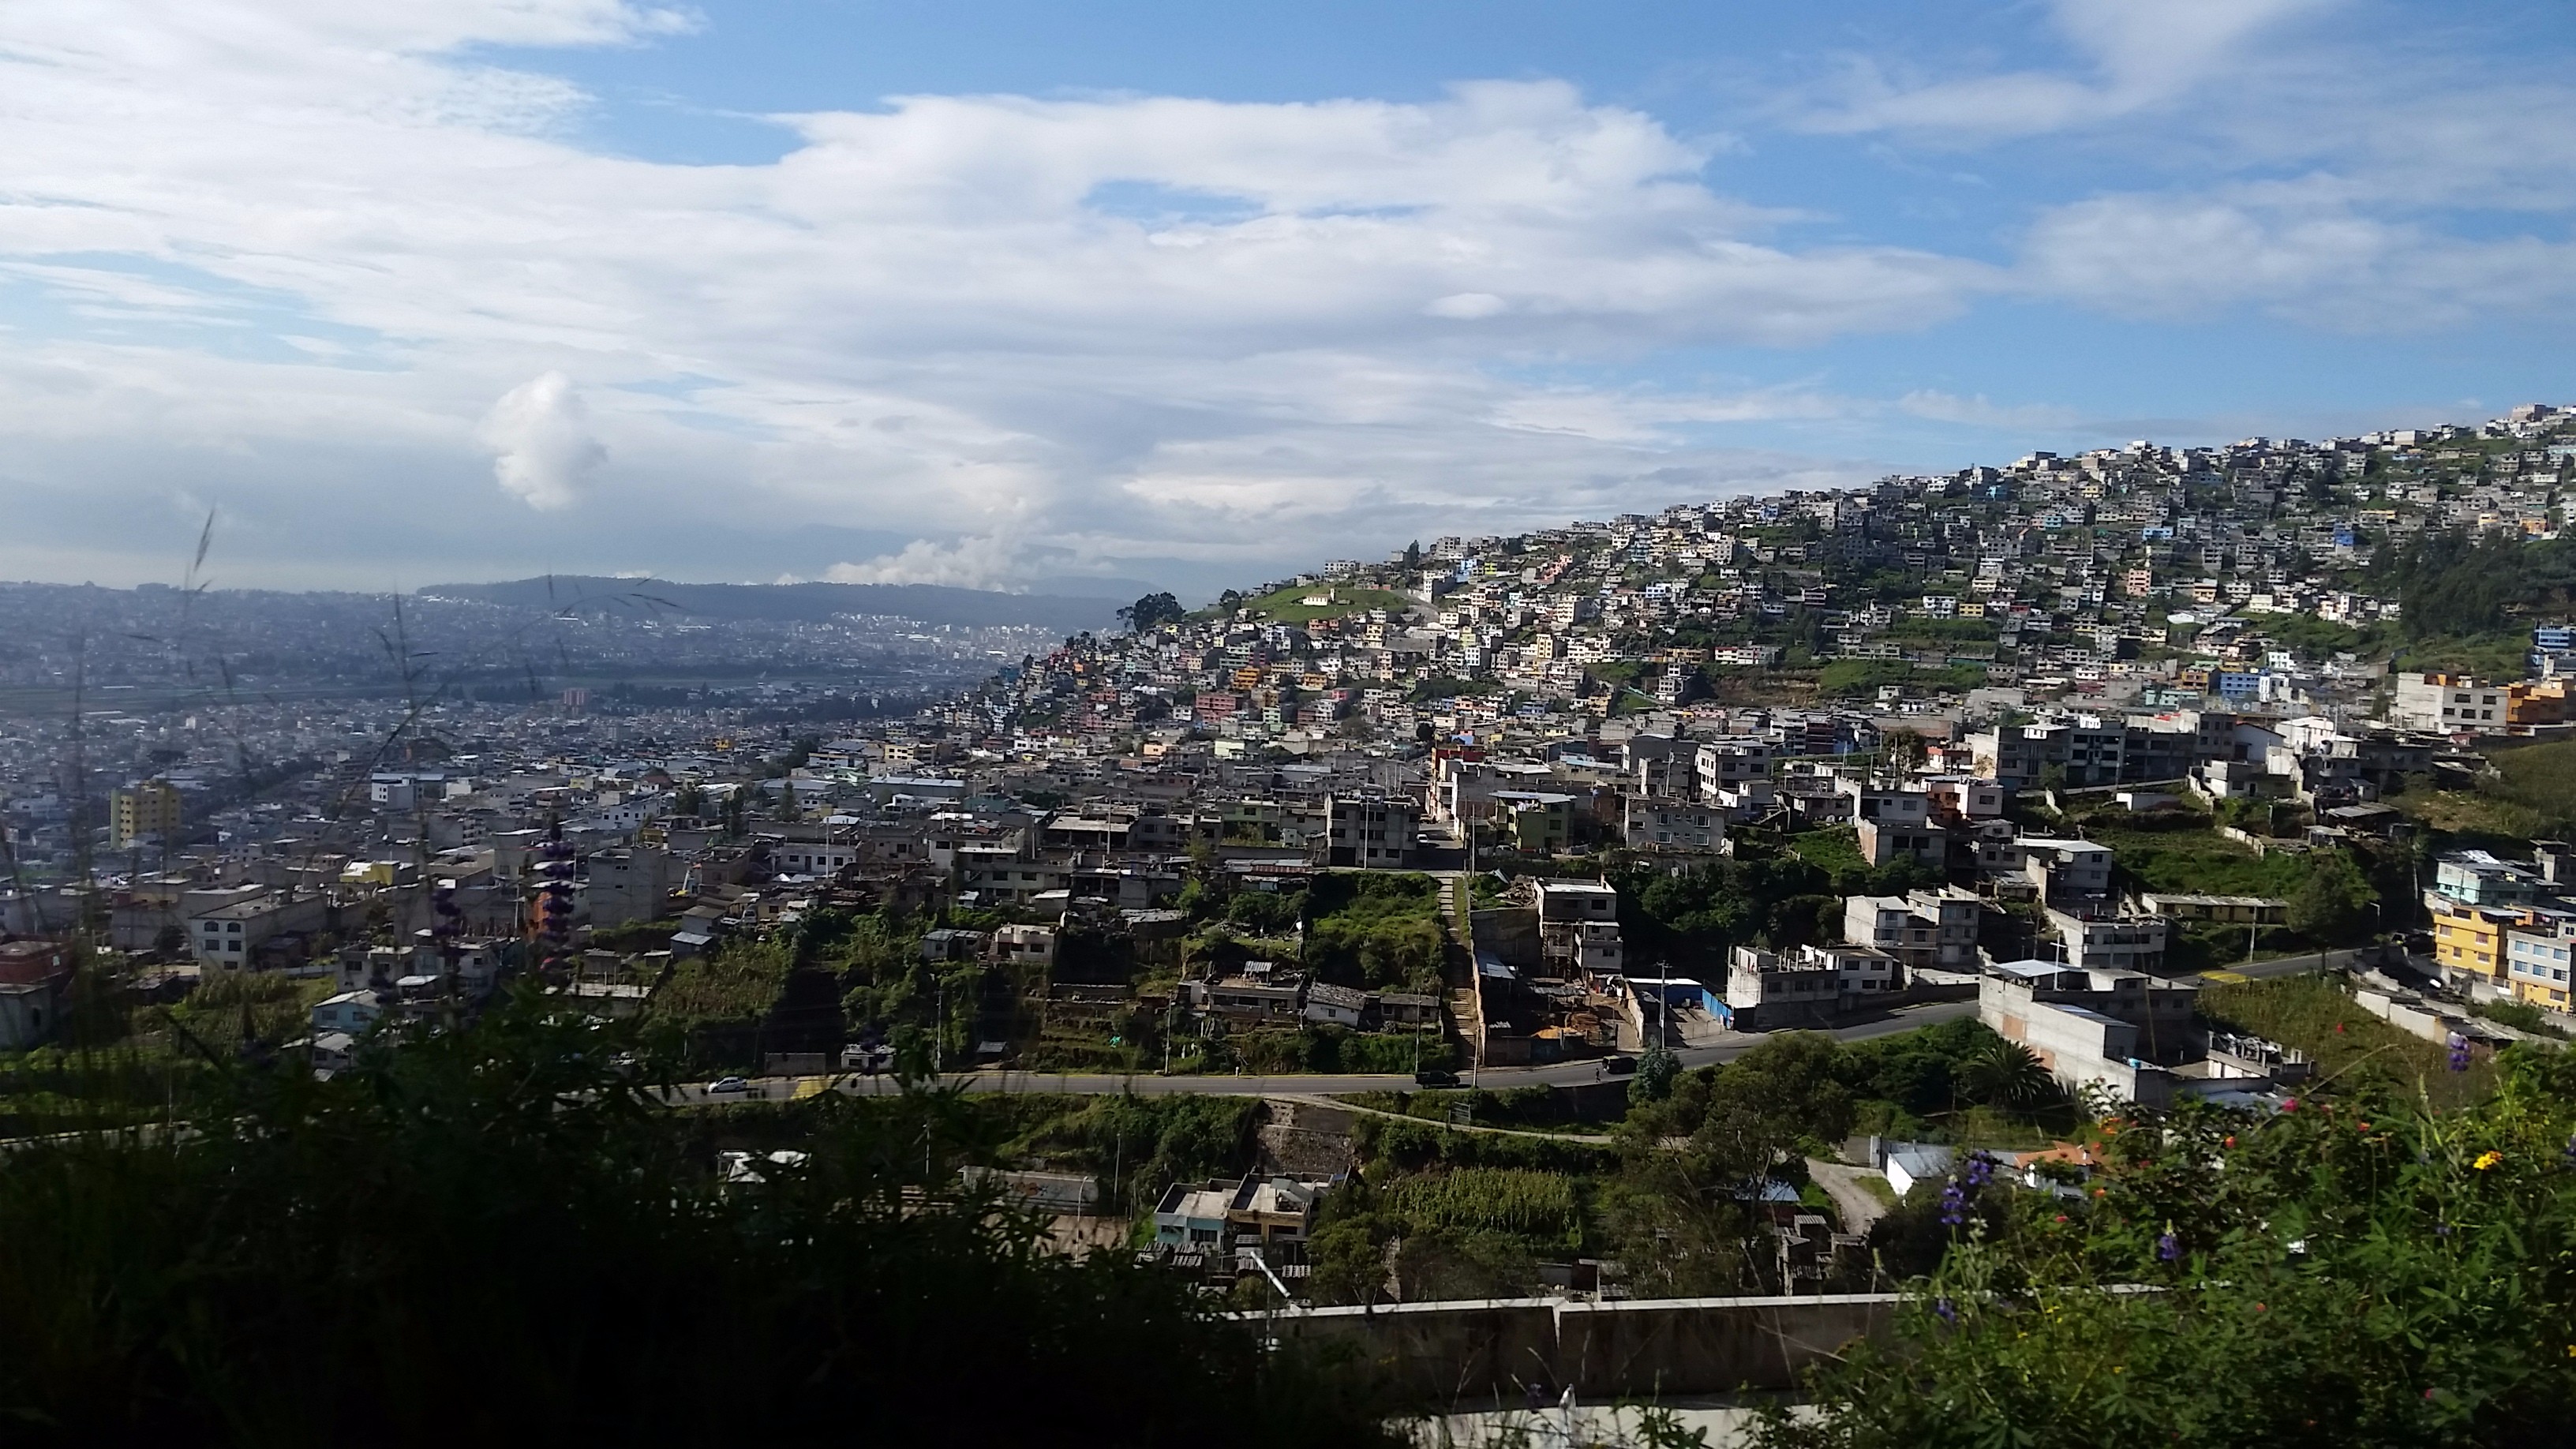 Another Quito vista.